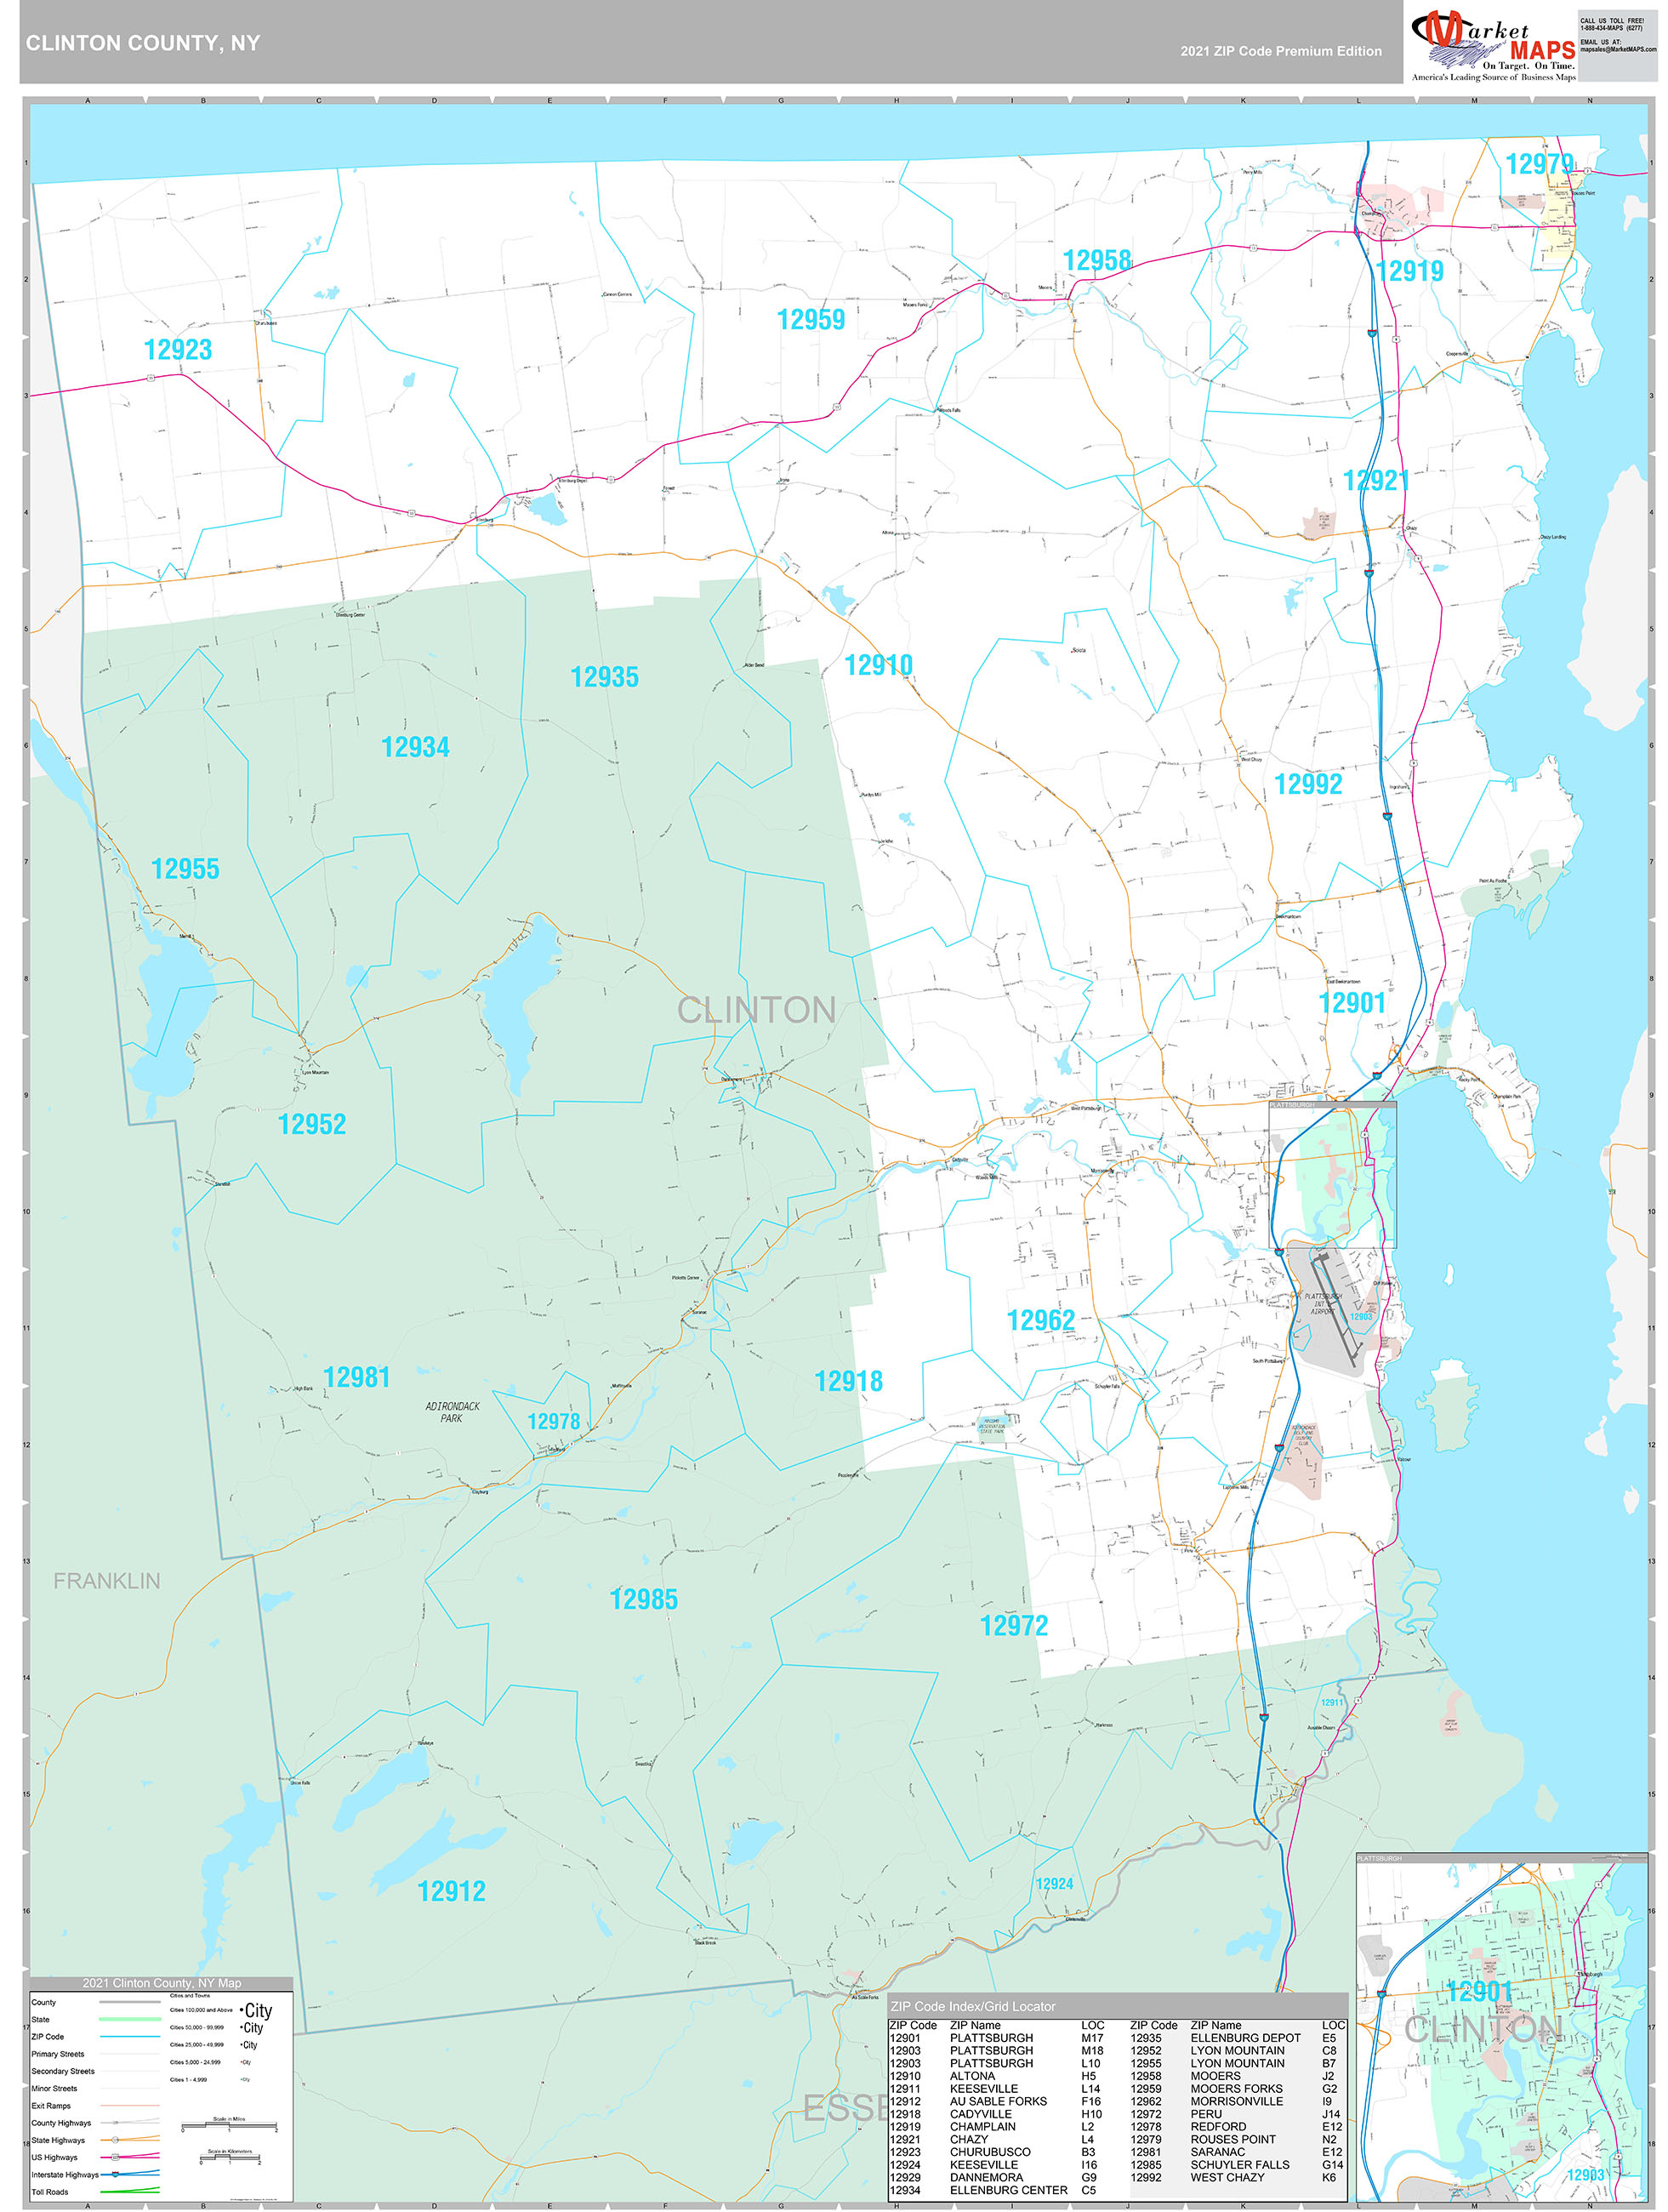 Clinton County, NY Wall Map Premium Style by MarketMAPS